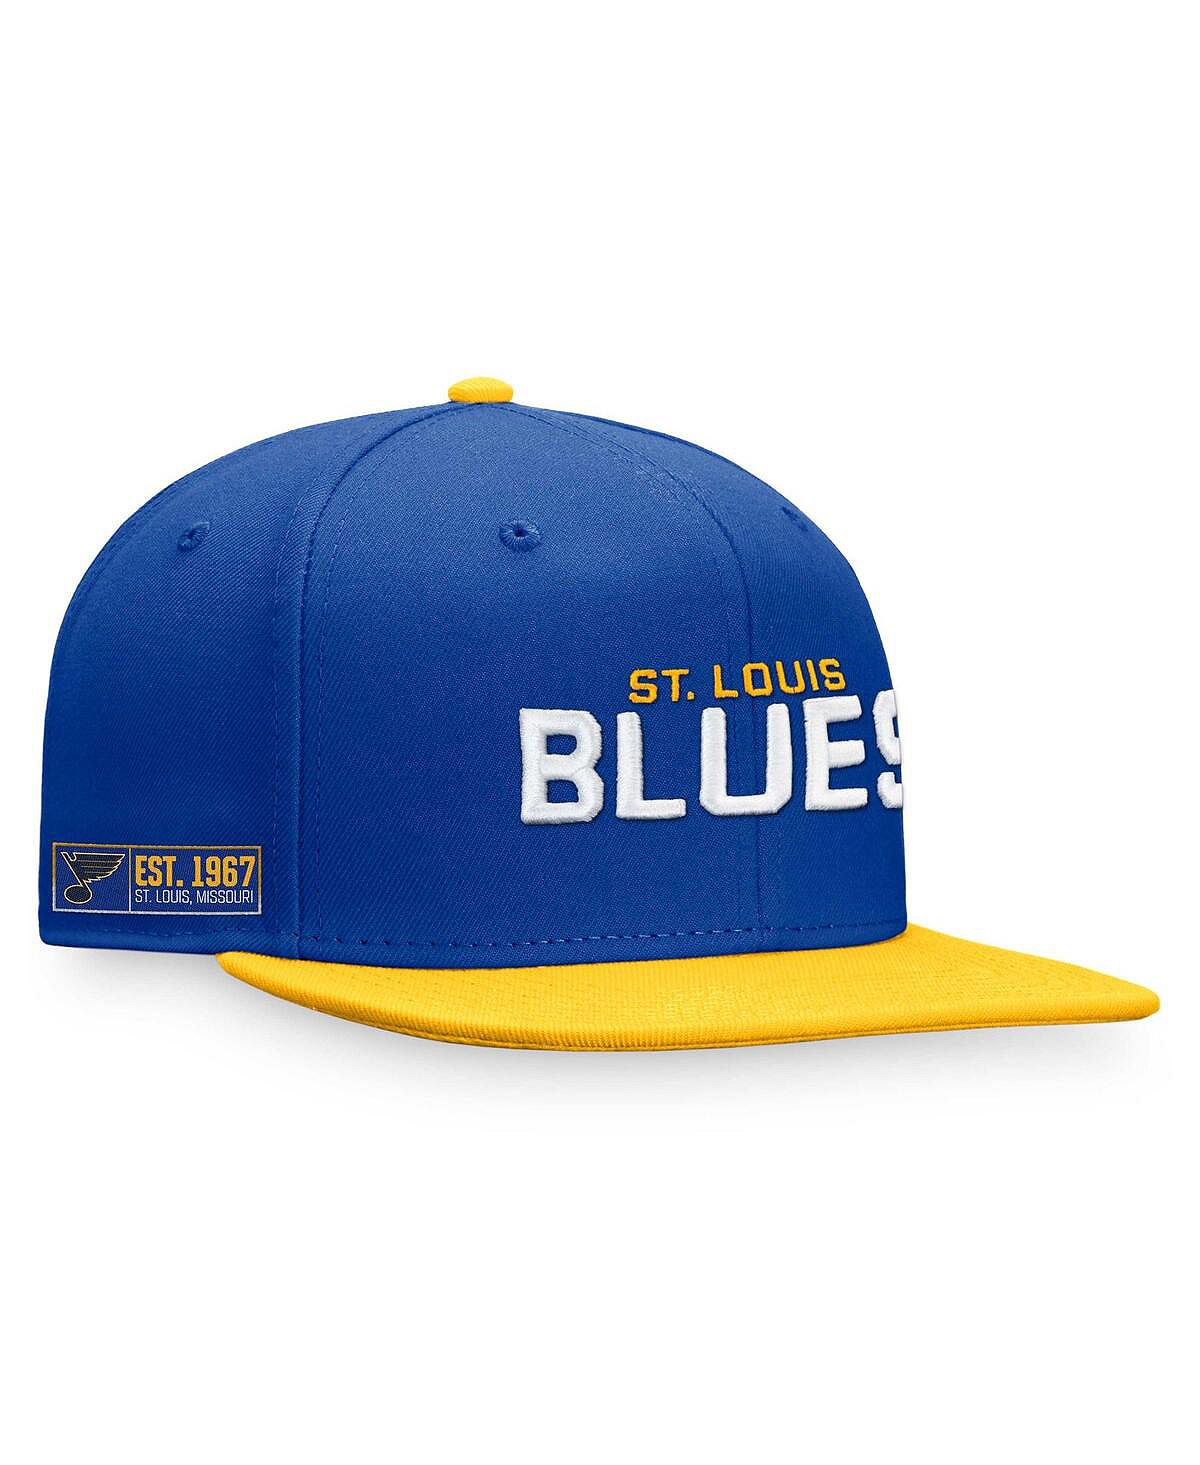 Мужская фирменная сине-золотая шляпа St. Louis Blues Iconic Snapback с цветными блоками Fanatics серьги blue gold